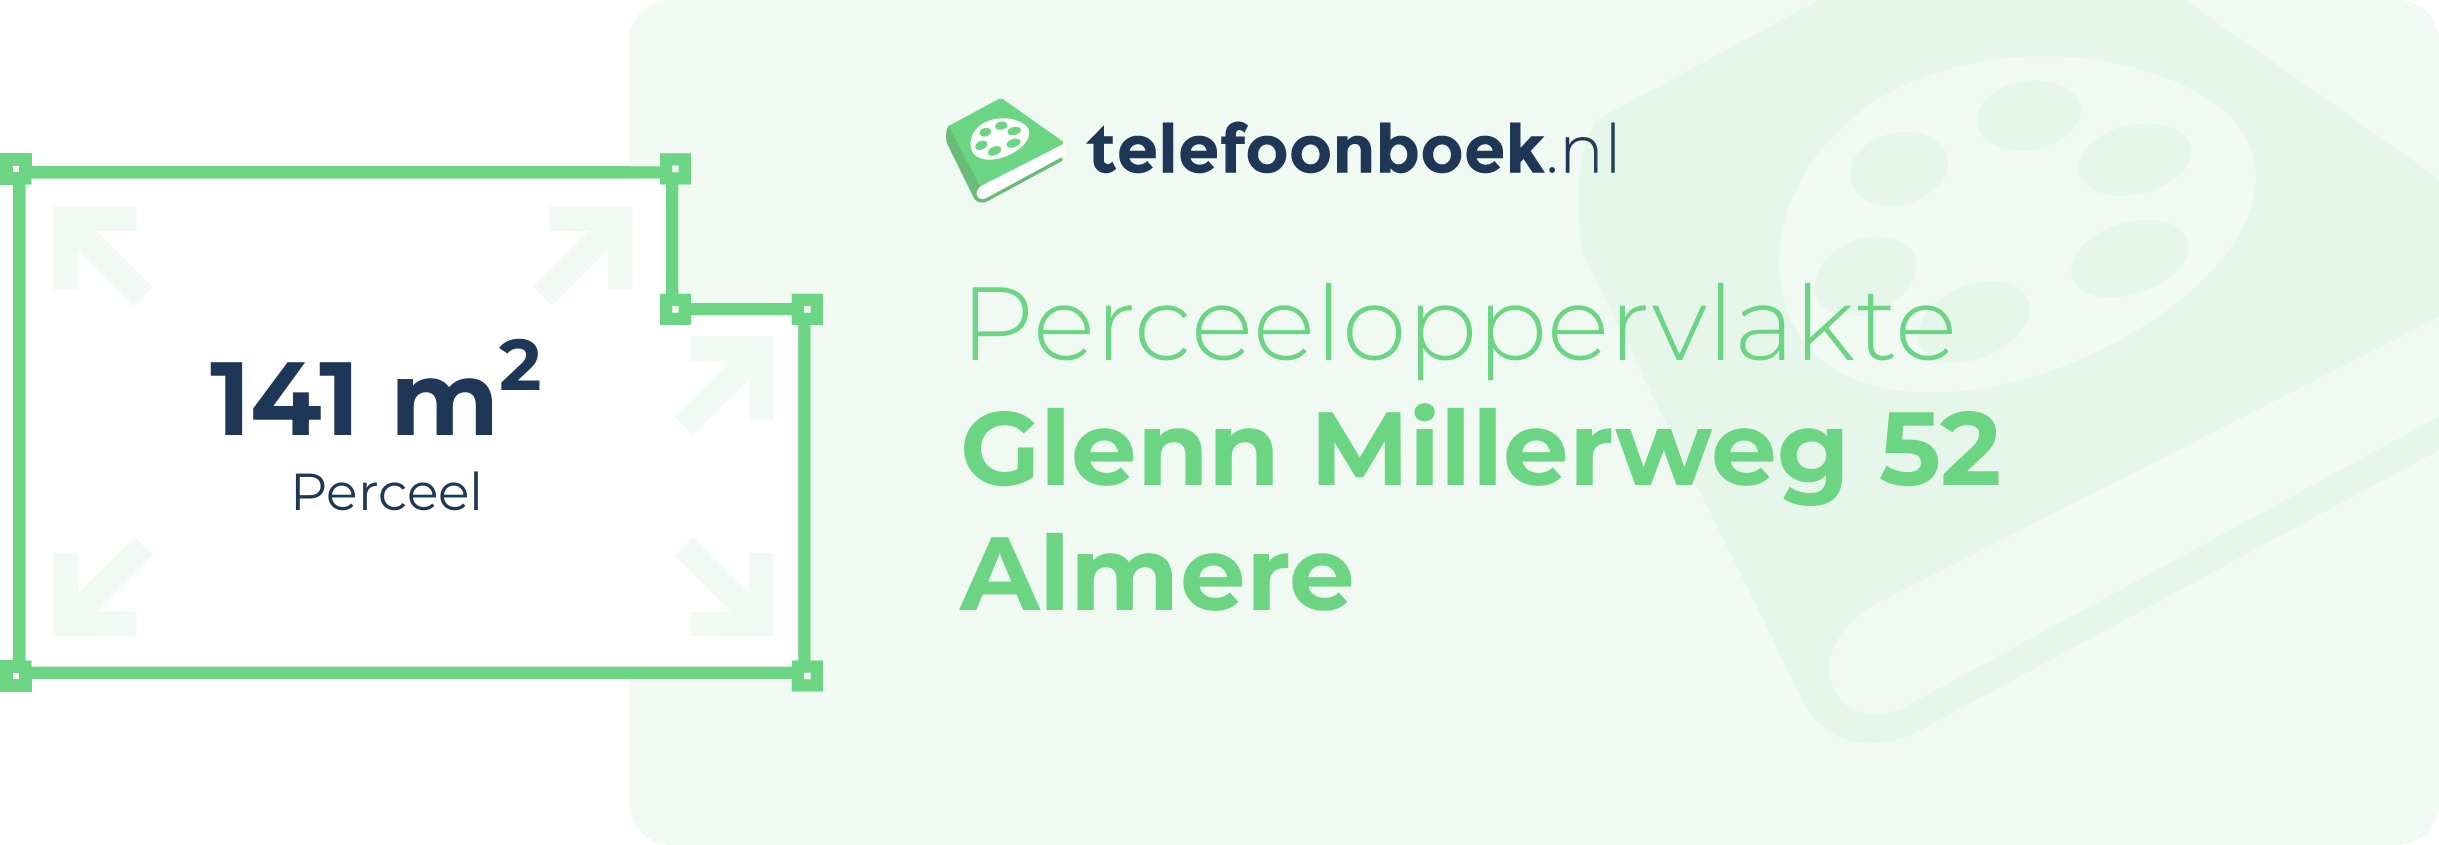 Perceeloppervlakte Glenn Millerweg 52 Almere